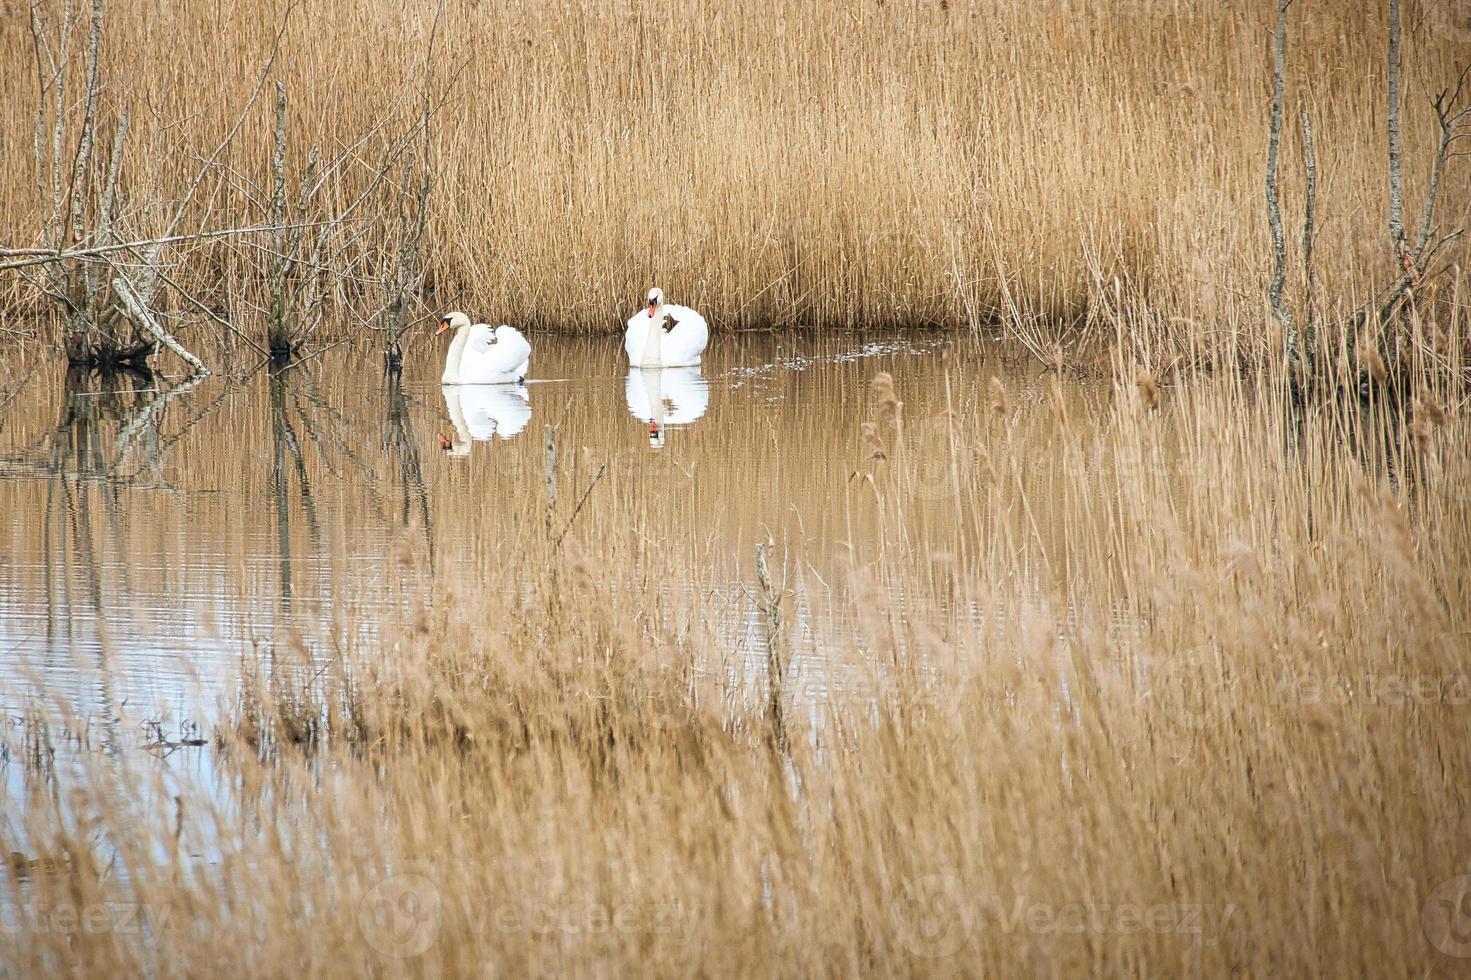 par de cisnes en el parque natural de darss. tiempo de apareamiento de las aves. cisnes mudos con plumaje blanco. foto